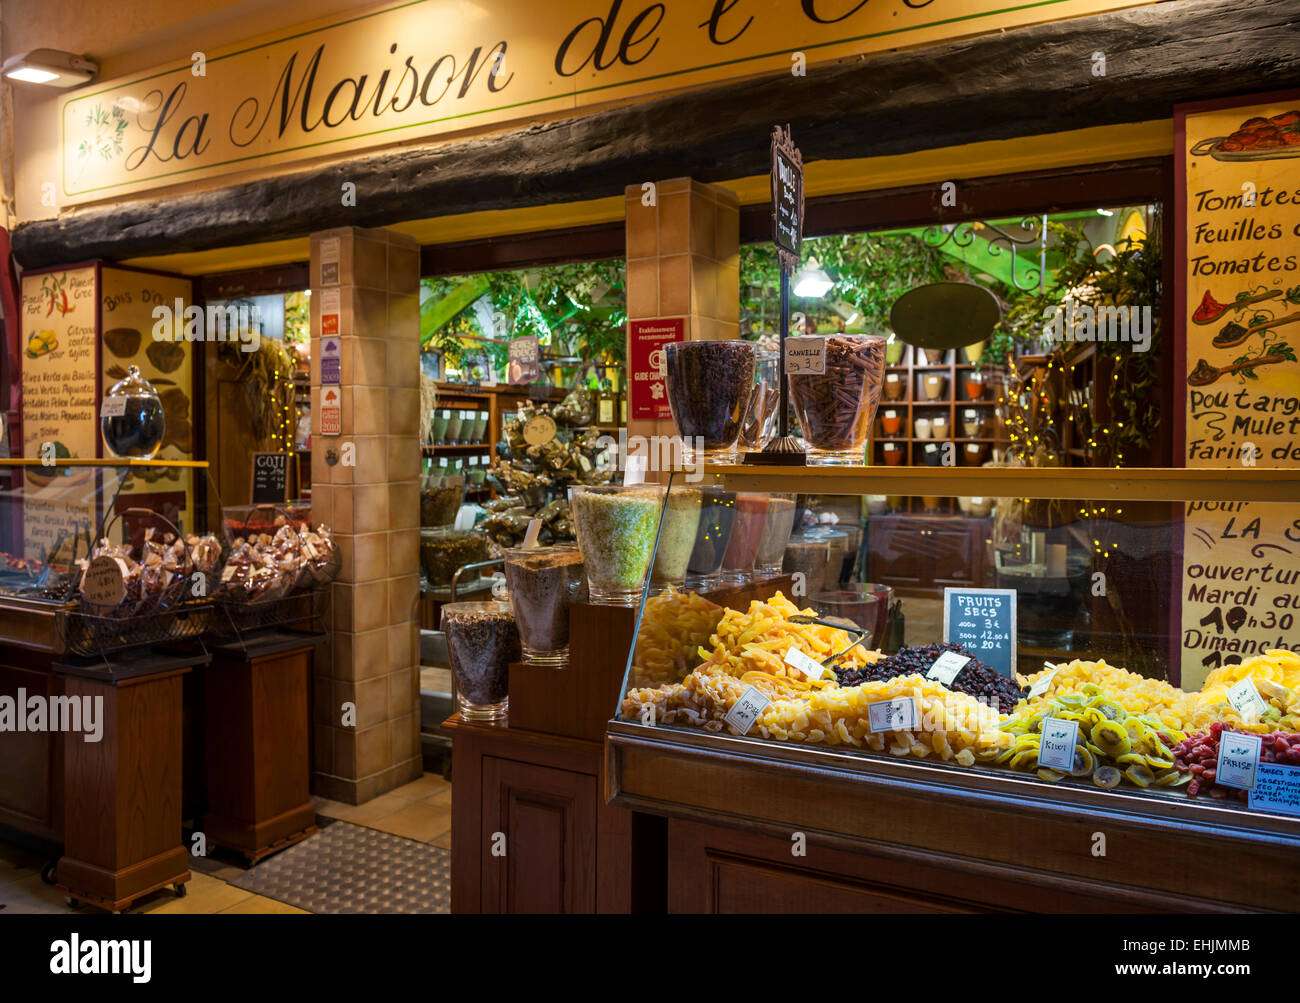 Nizza, Frankreich - 2. Oktober 2014: Feinkostladen "La Maison de l'Olive" auf der Rue Pairoliere, einer malerischen Fußgängerzone Stockfoto